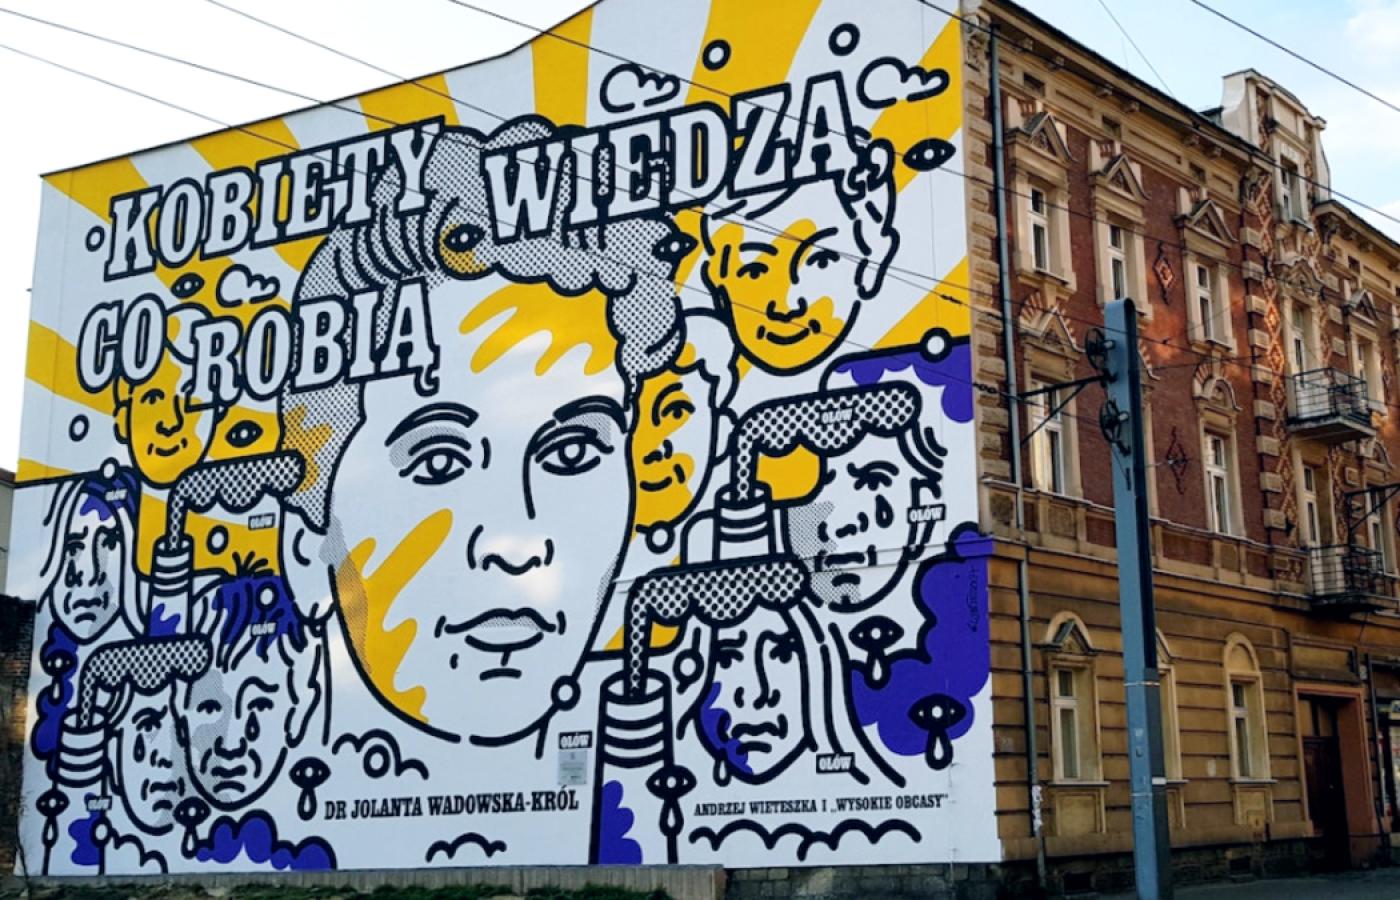 Strajk kobiet. Mural w Katowicach